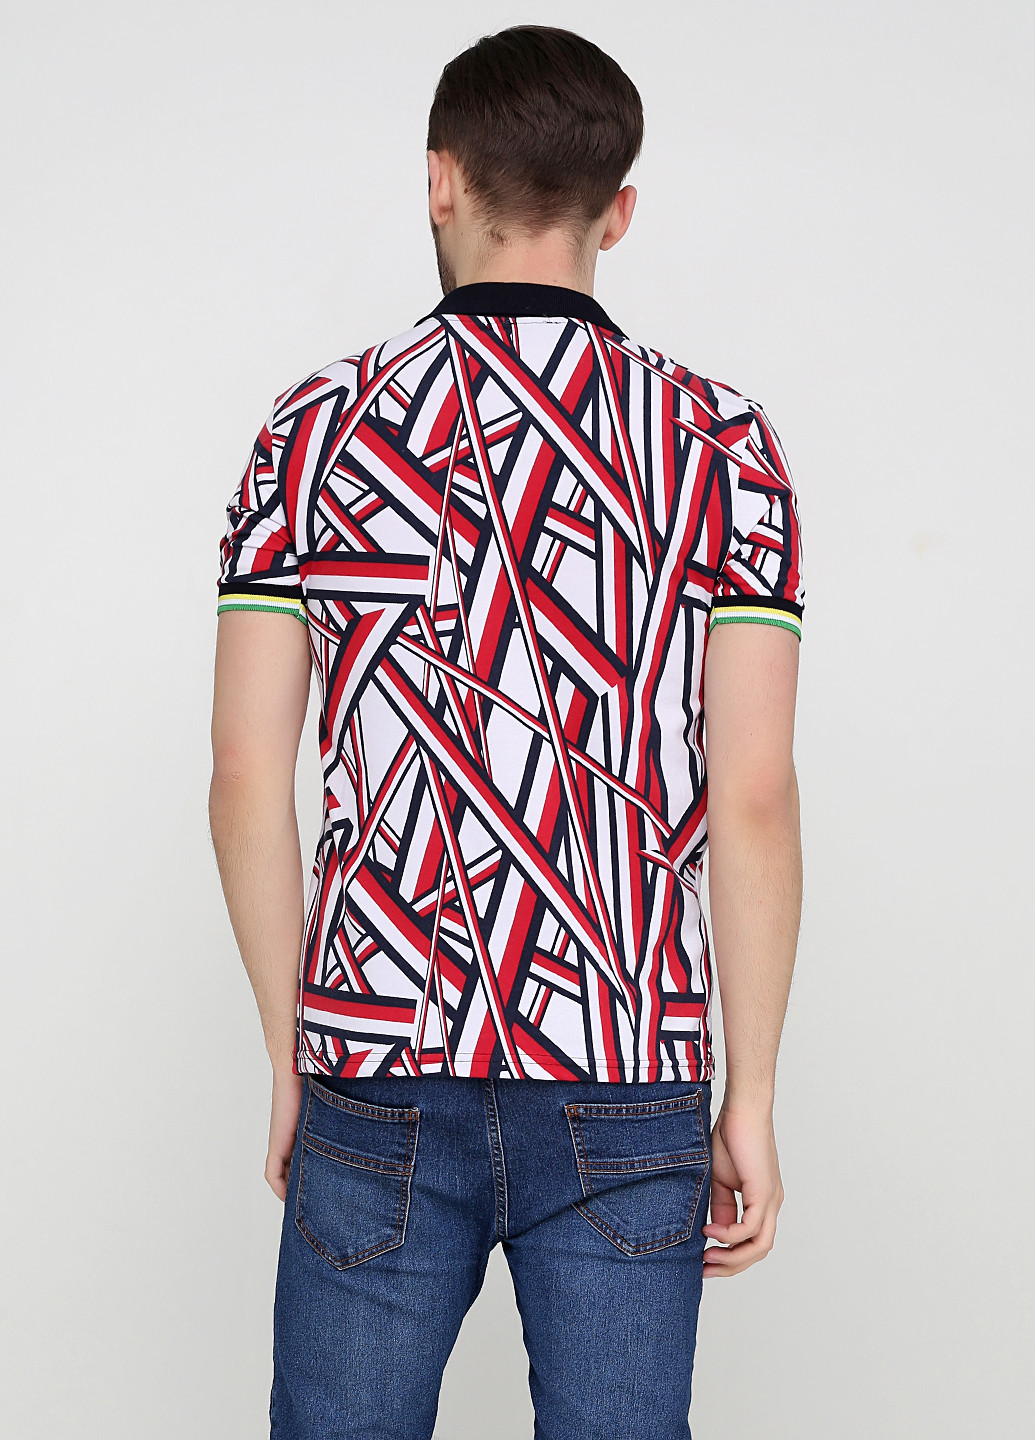 Цветная футболка-поло для мужчин Chiarotex с геометрическим узором